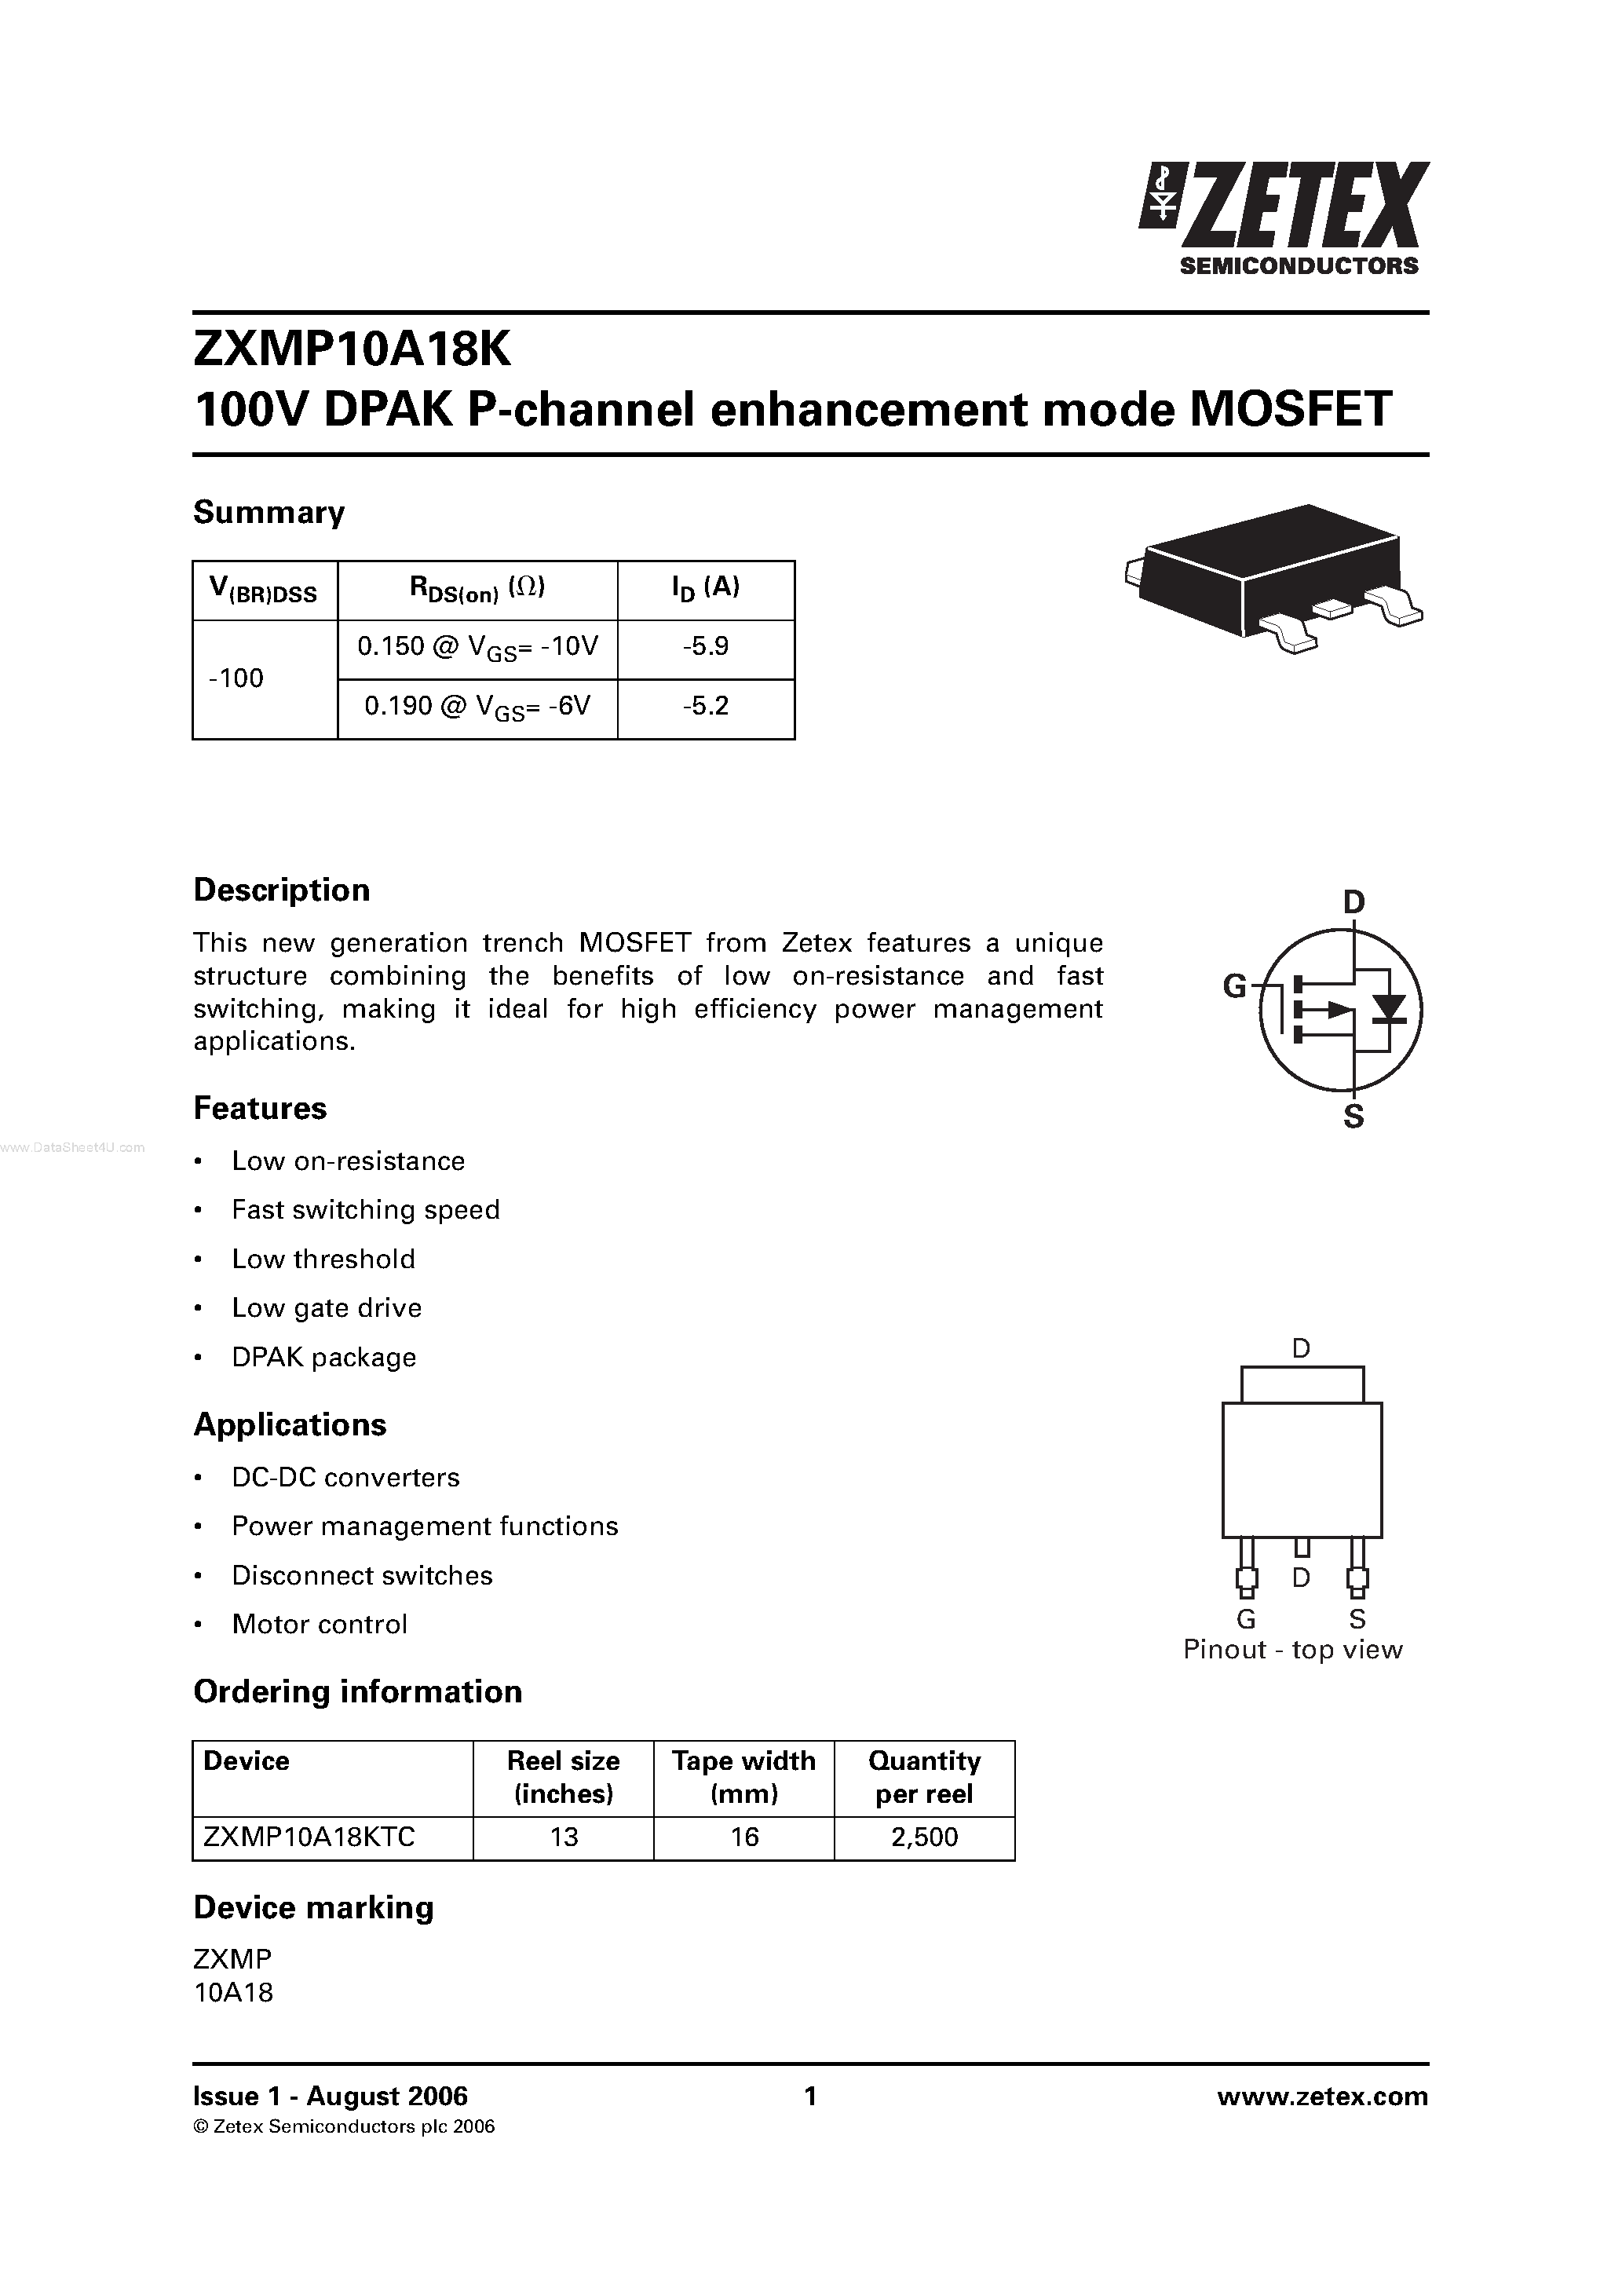 Datasheet ZXMP10A18K - DPAK P-channel enhancement mode MOSFET page 1